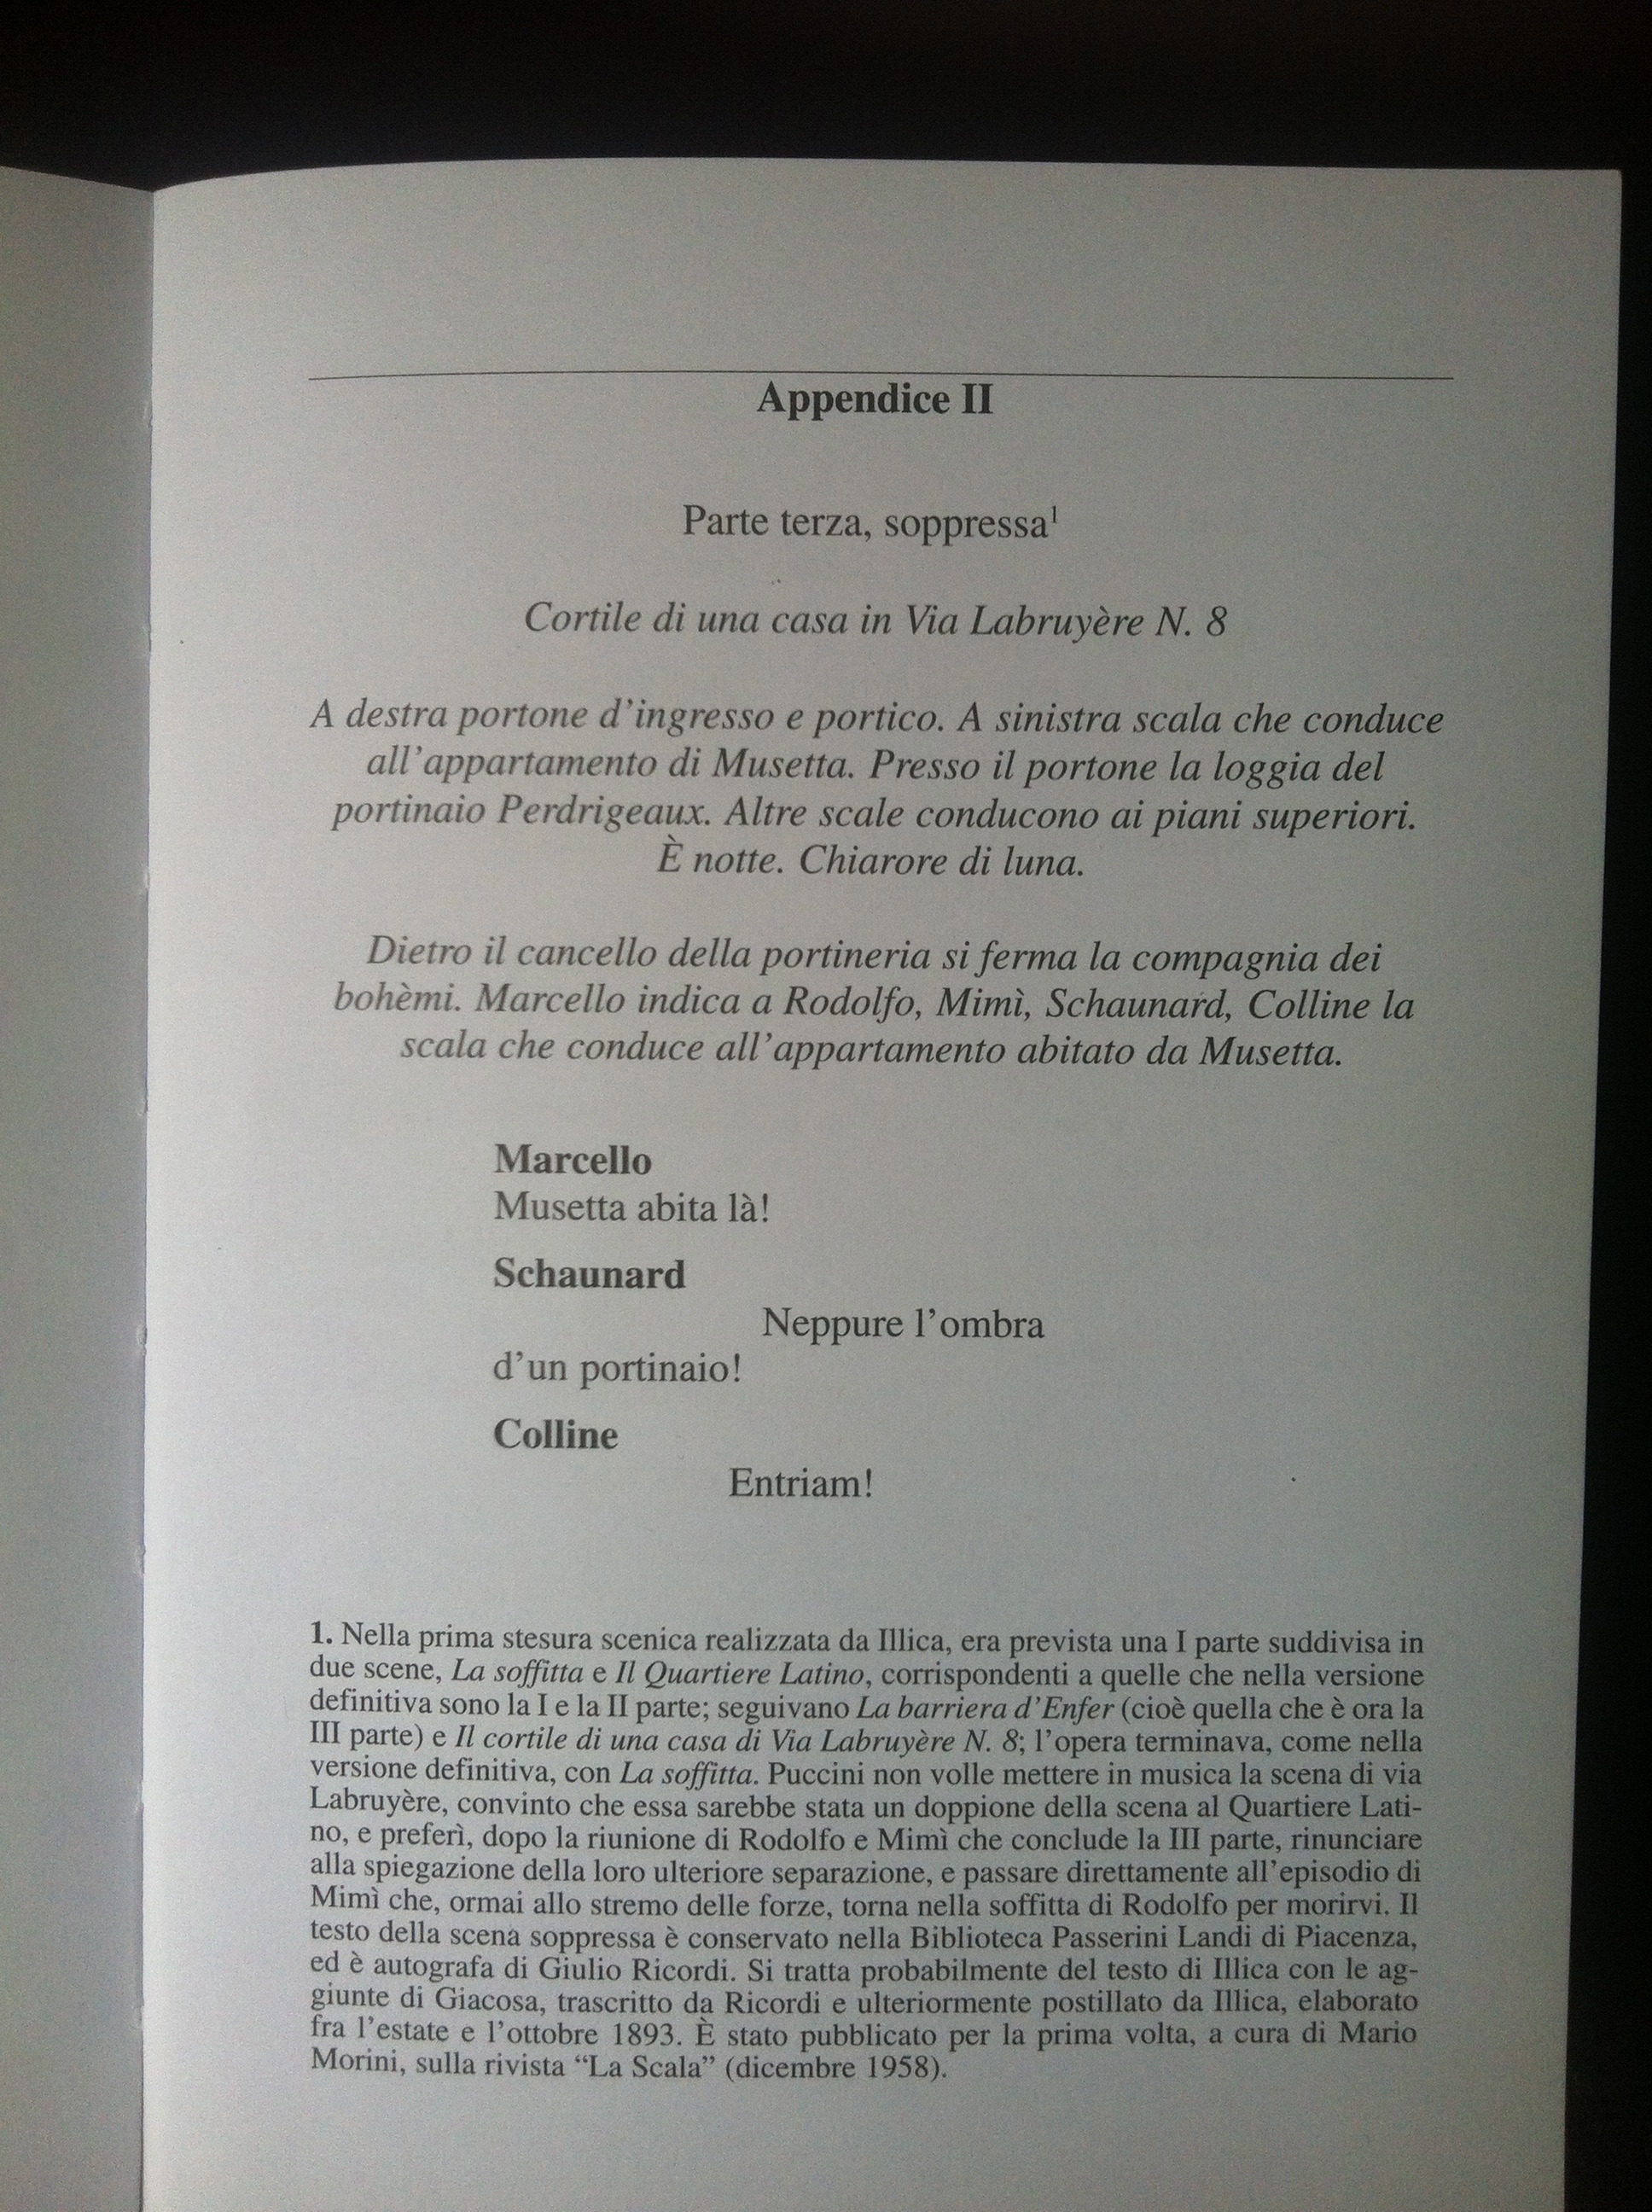 La bohème, libretto appendix, RIcordi, 2001